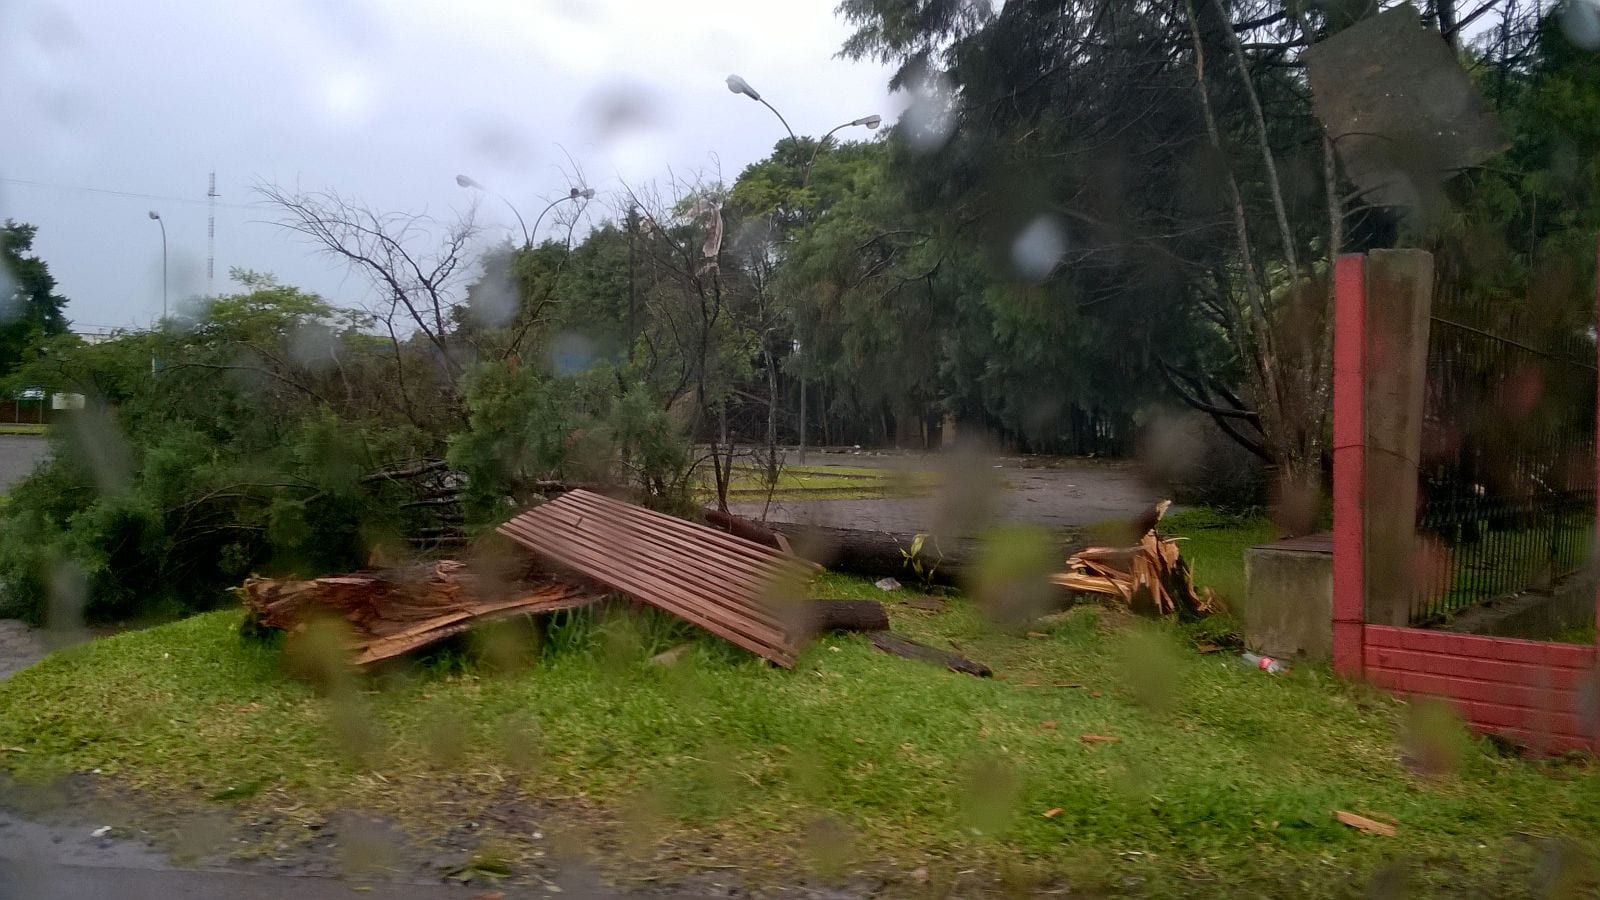 Boletim de informações sobre o temporal de hoje que atingiu o município